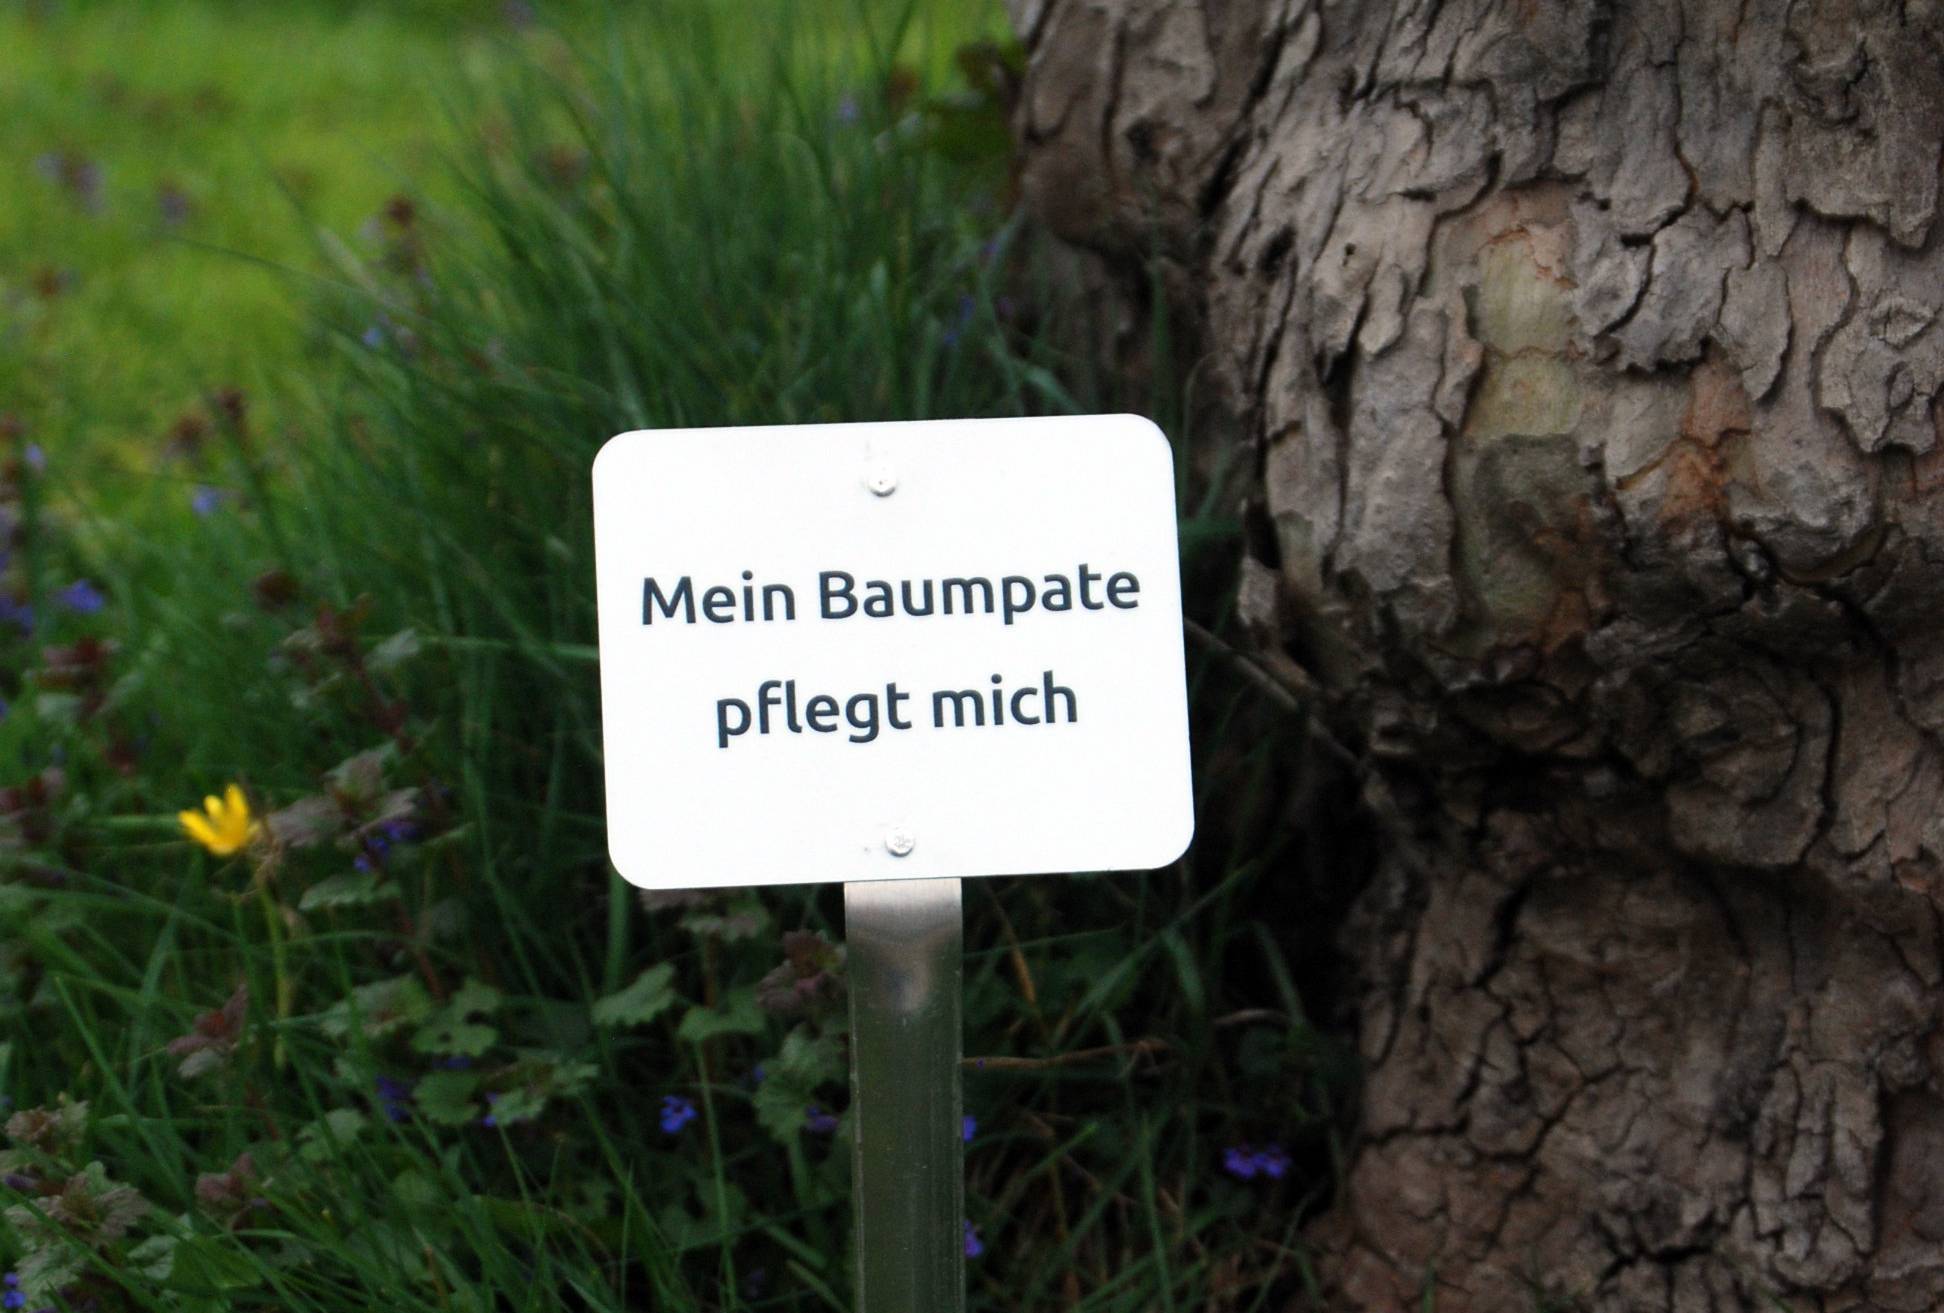  Das Schild mit der Aufschrift "Mein Baumpate pflegt mich" verhindert versehentliches Abmähen des Aufwuchses an der Baumscheibe. 